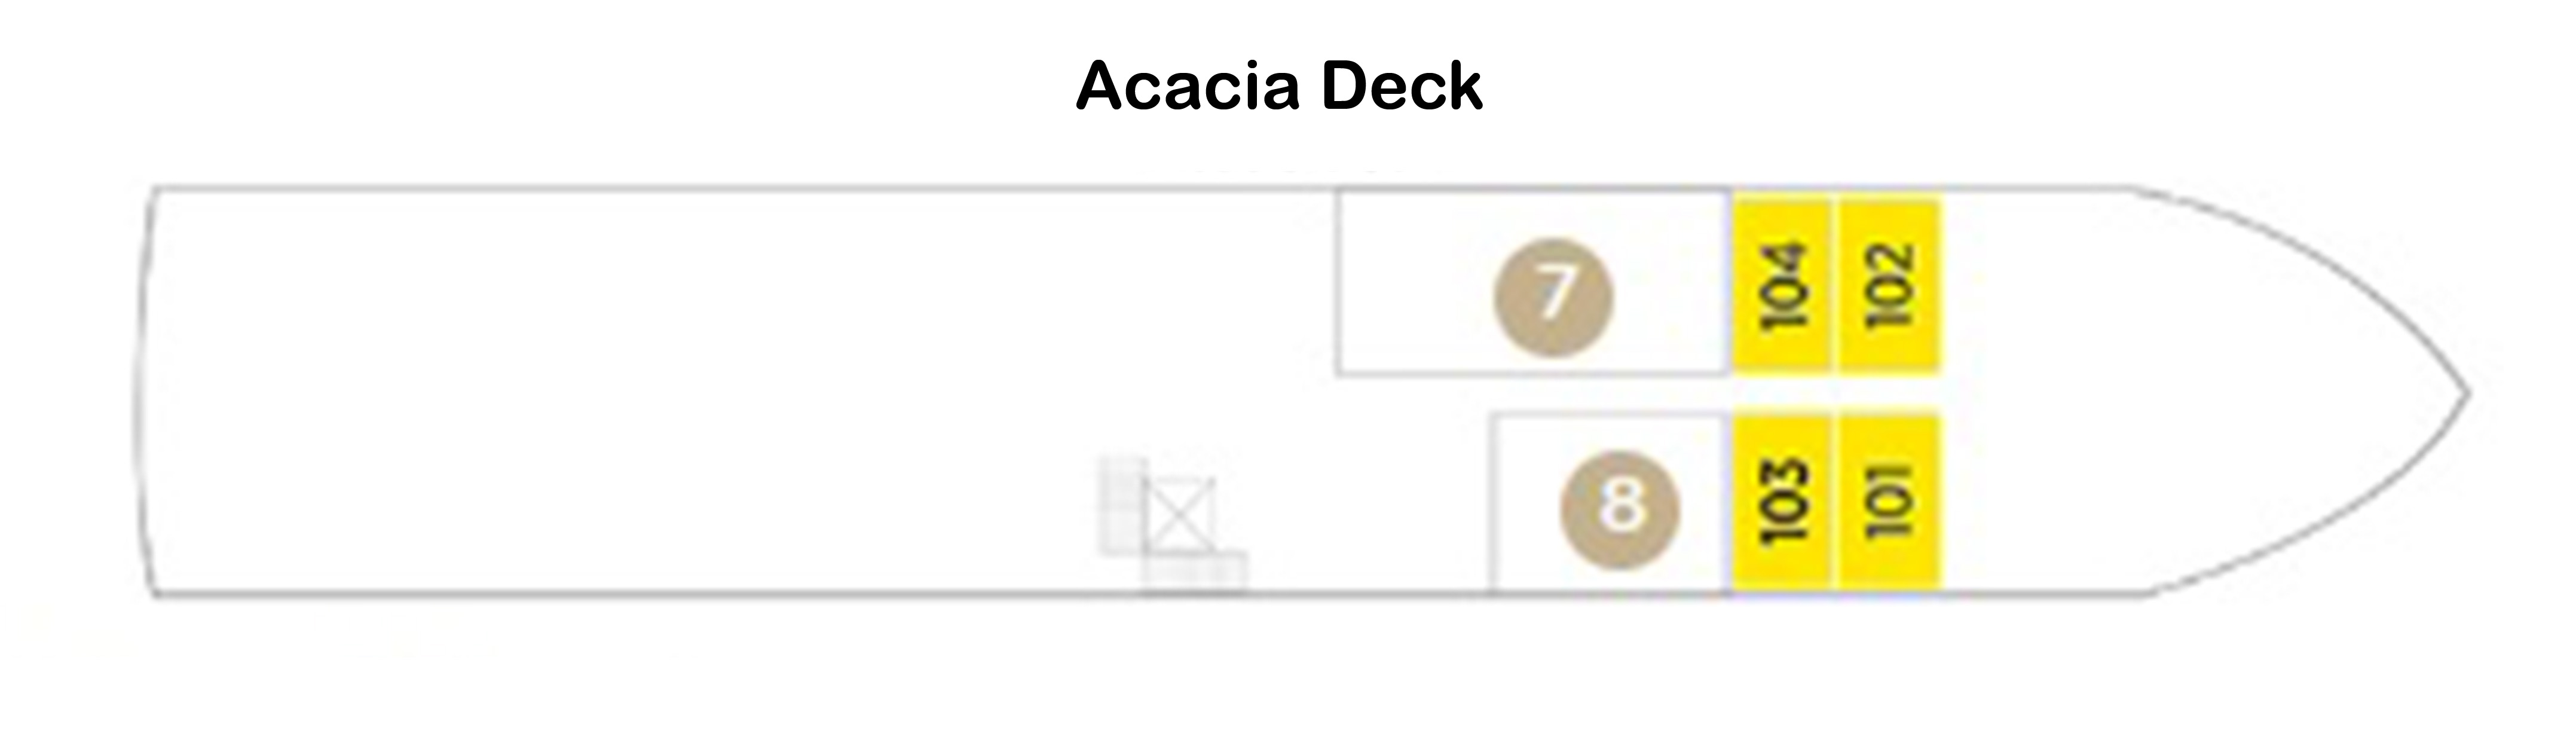 Acacia Deck